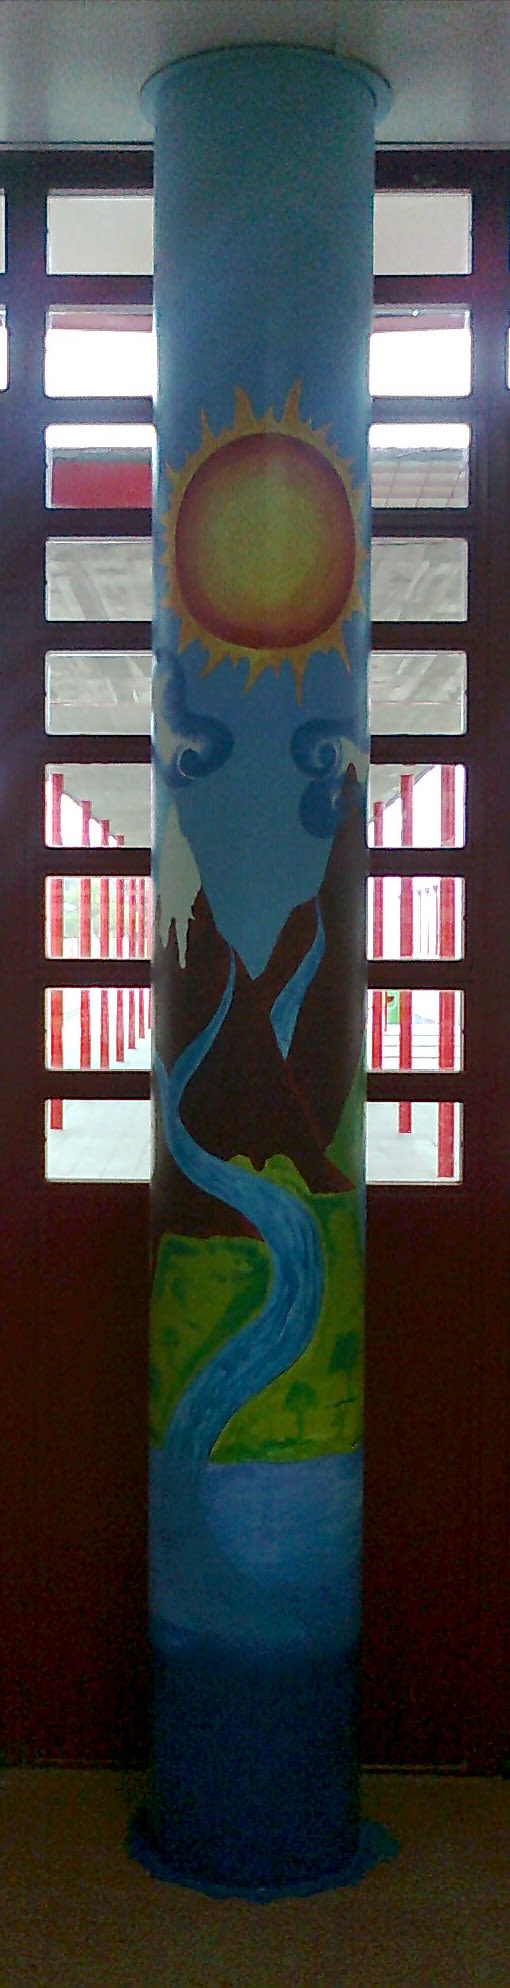 Pintura Mural en el colegio "Antonio Osuna"Tres Cantos 2011 40